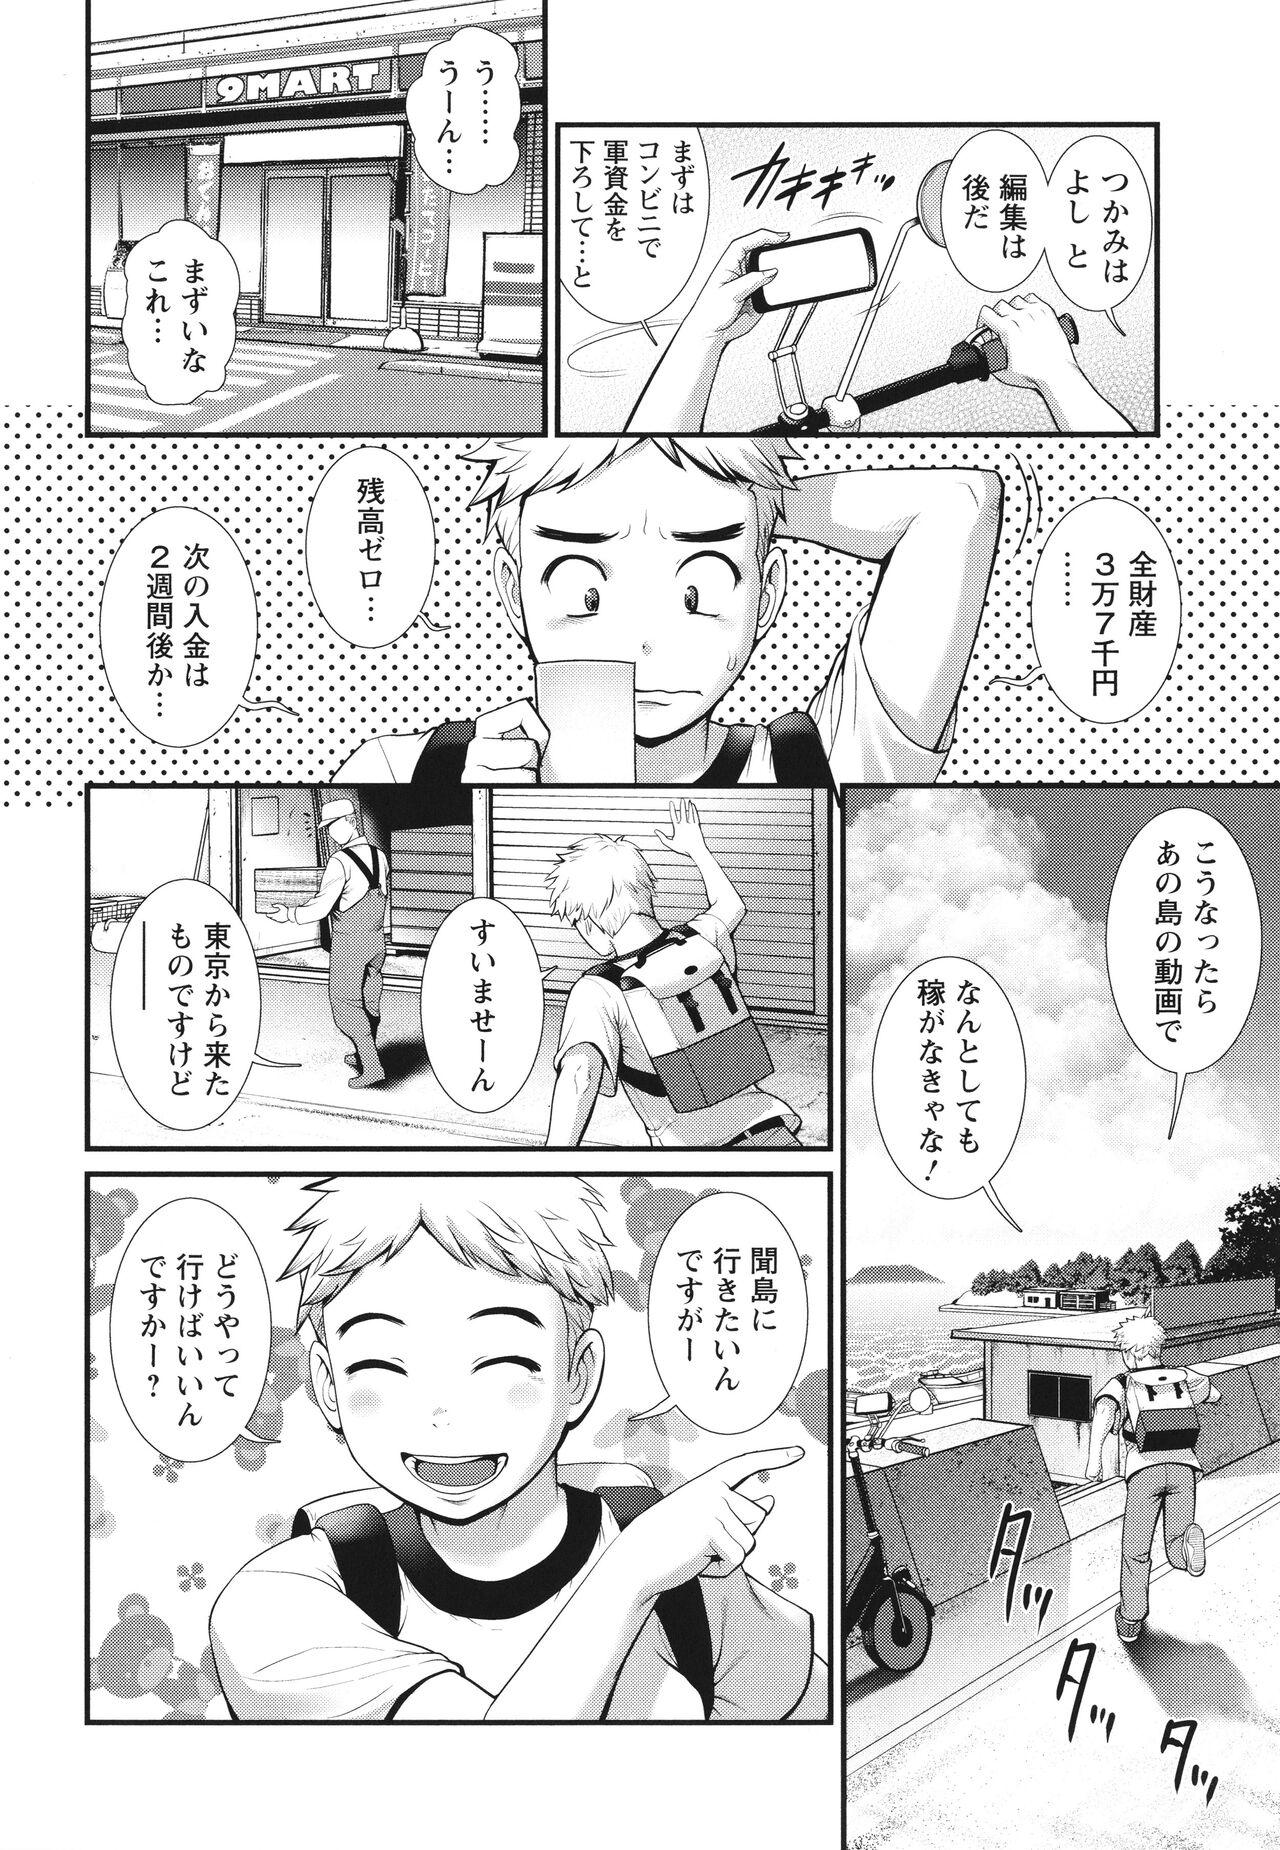 Chaturbate Meshibe no Sakihokoru Shima de Small - Page 11